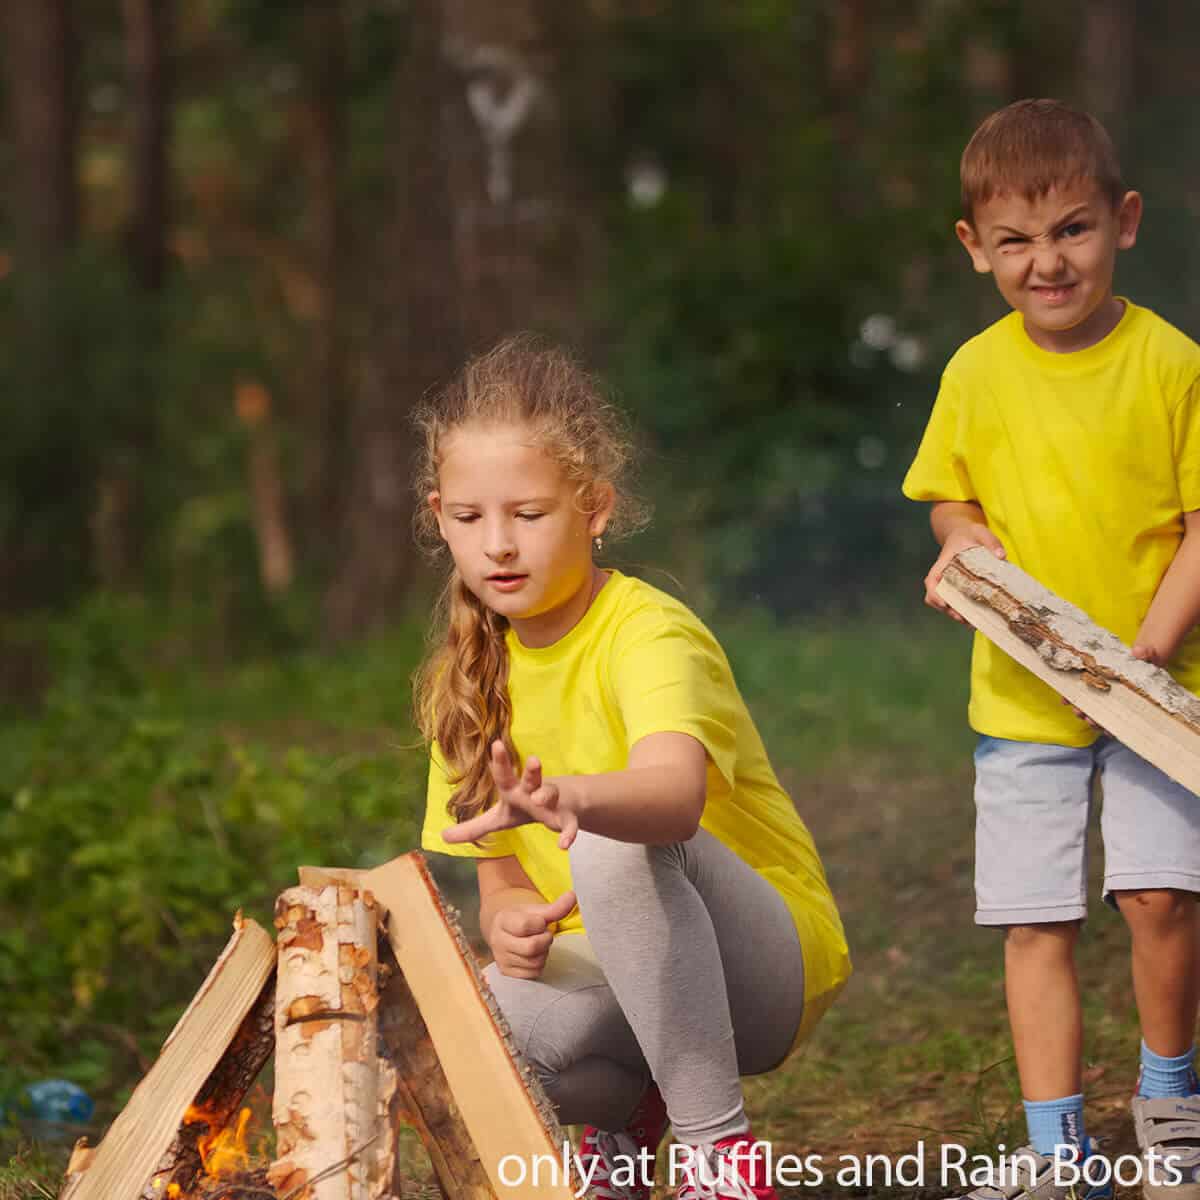 make camping chores fun for kids